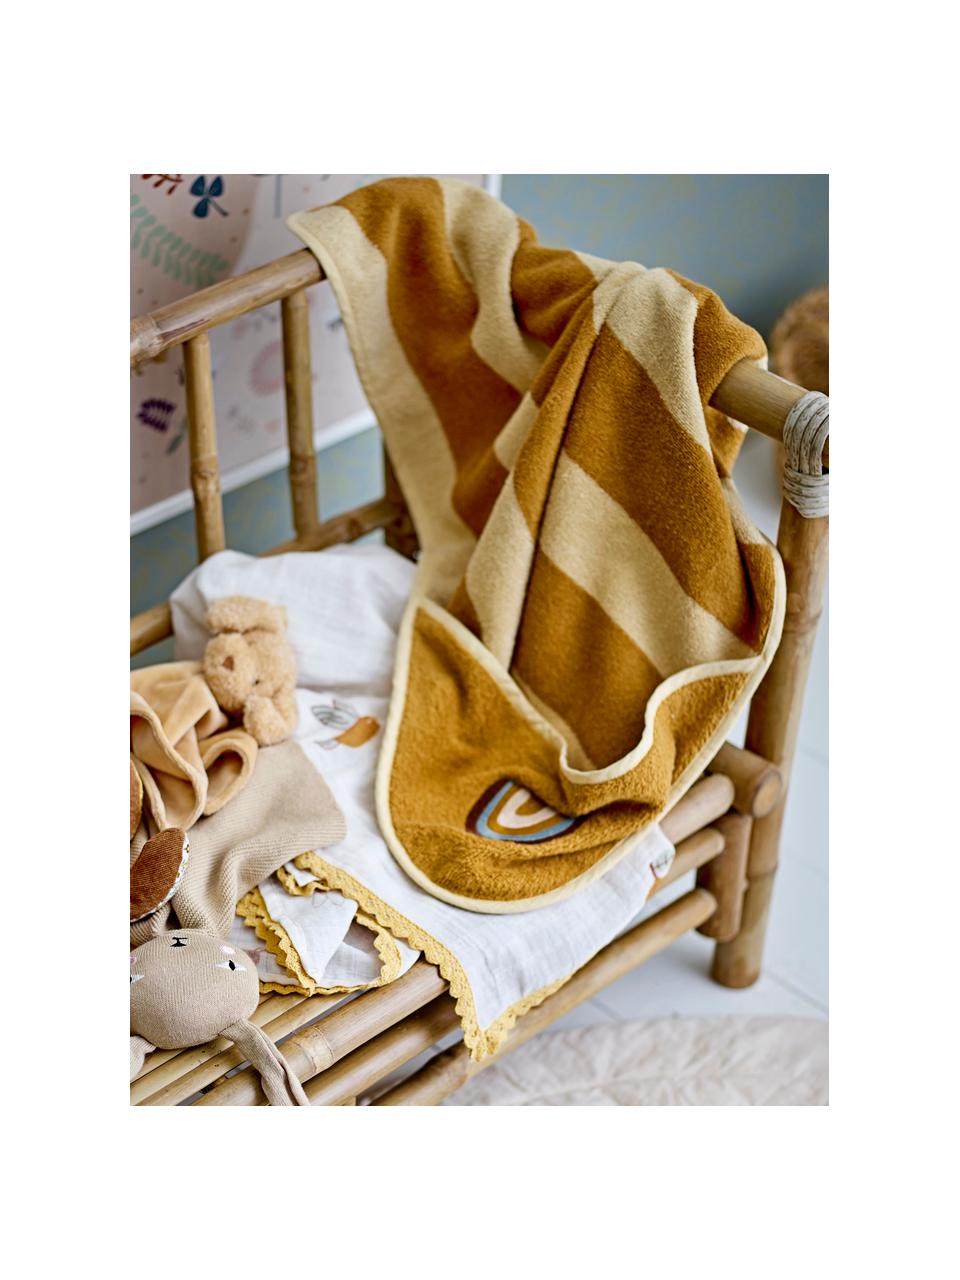 Serviette bébé en coton Agnes, 90 % coton, 10 % polyester

Grammage léger 350 g/m², Brun clair, beige, larg. 78 x long. 78 cm